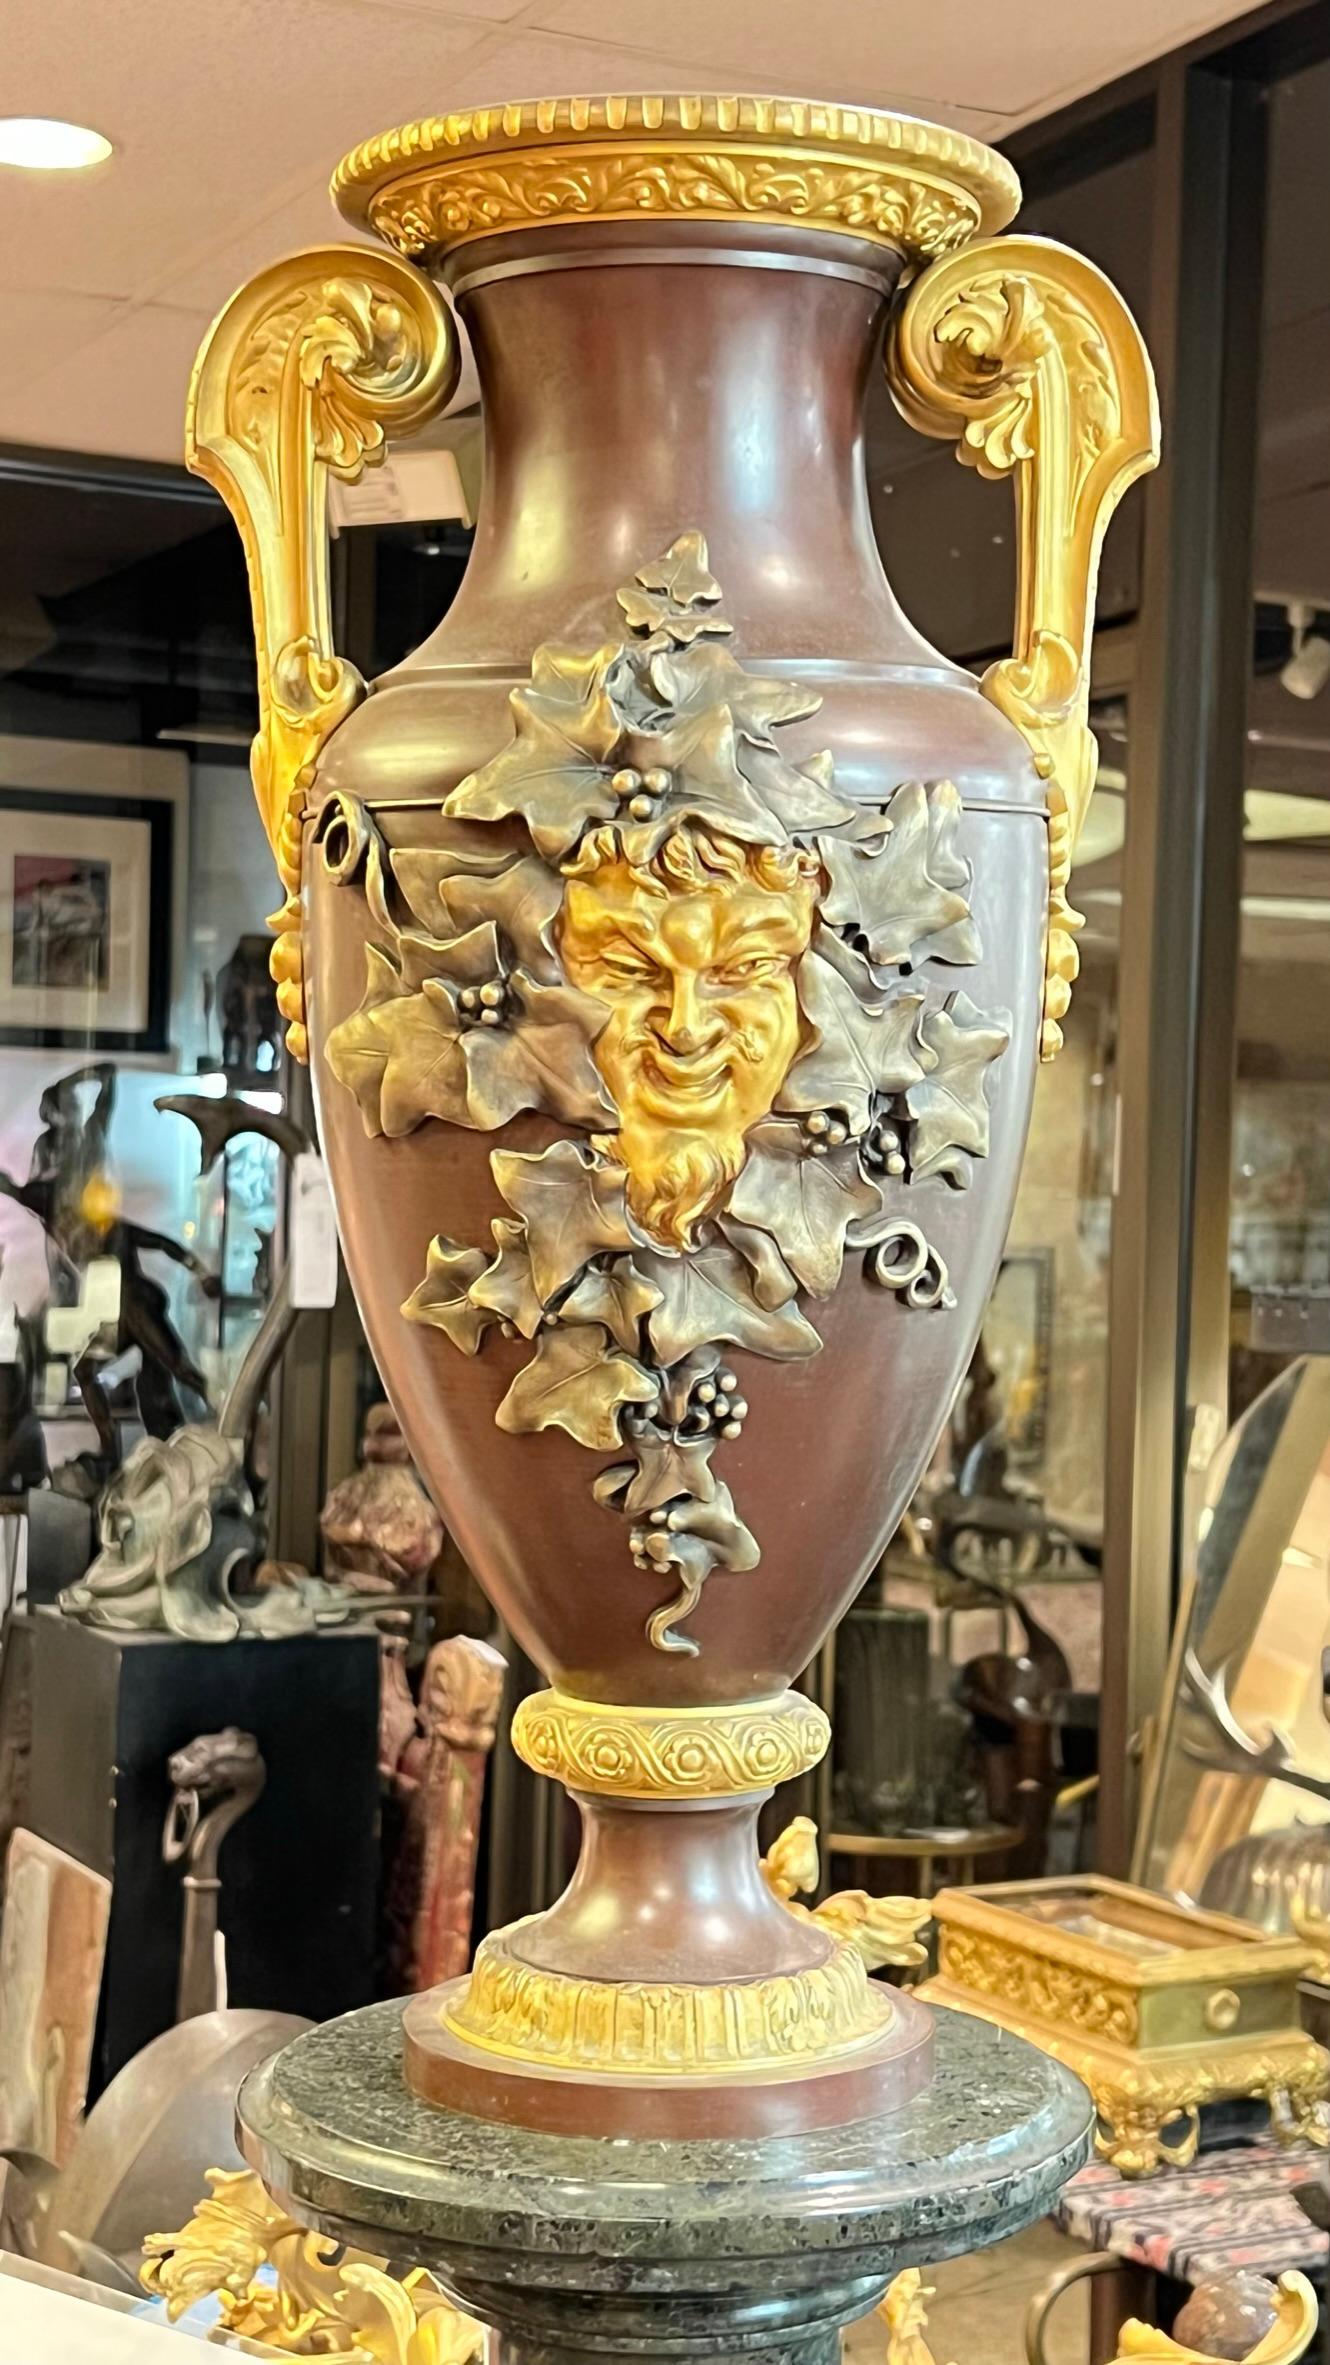 Unsere Mittelstück-Vase, die Ferdinand Barbedienne um 1870 zugeschrieben wird, zeigt eine ausdrucksstarke Bacchus-Maske, die von versilberten Weinreben umgeben ist, prominente vergoldete Bronzegriffe mit Akanthusblatt- und Glockenblumenmotiven sowie